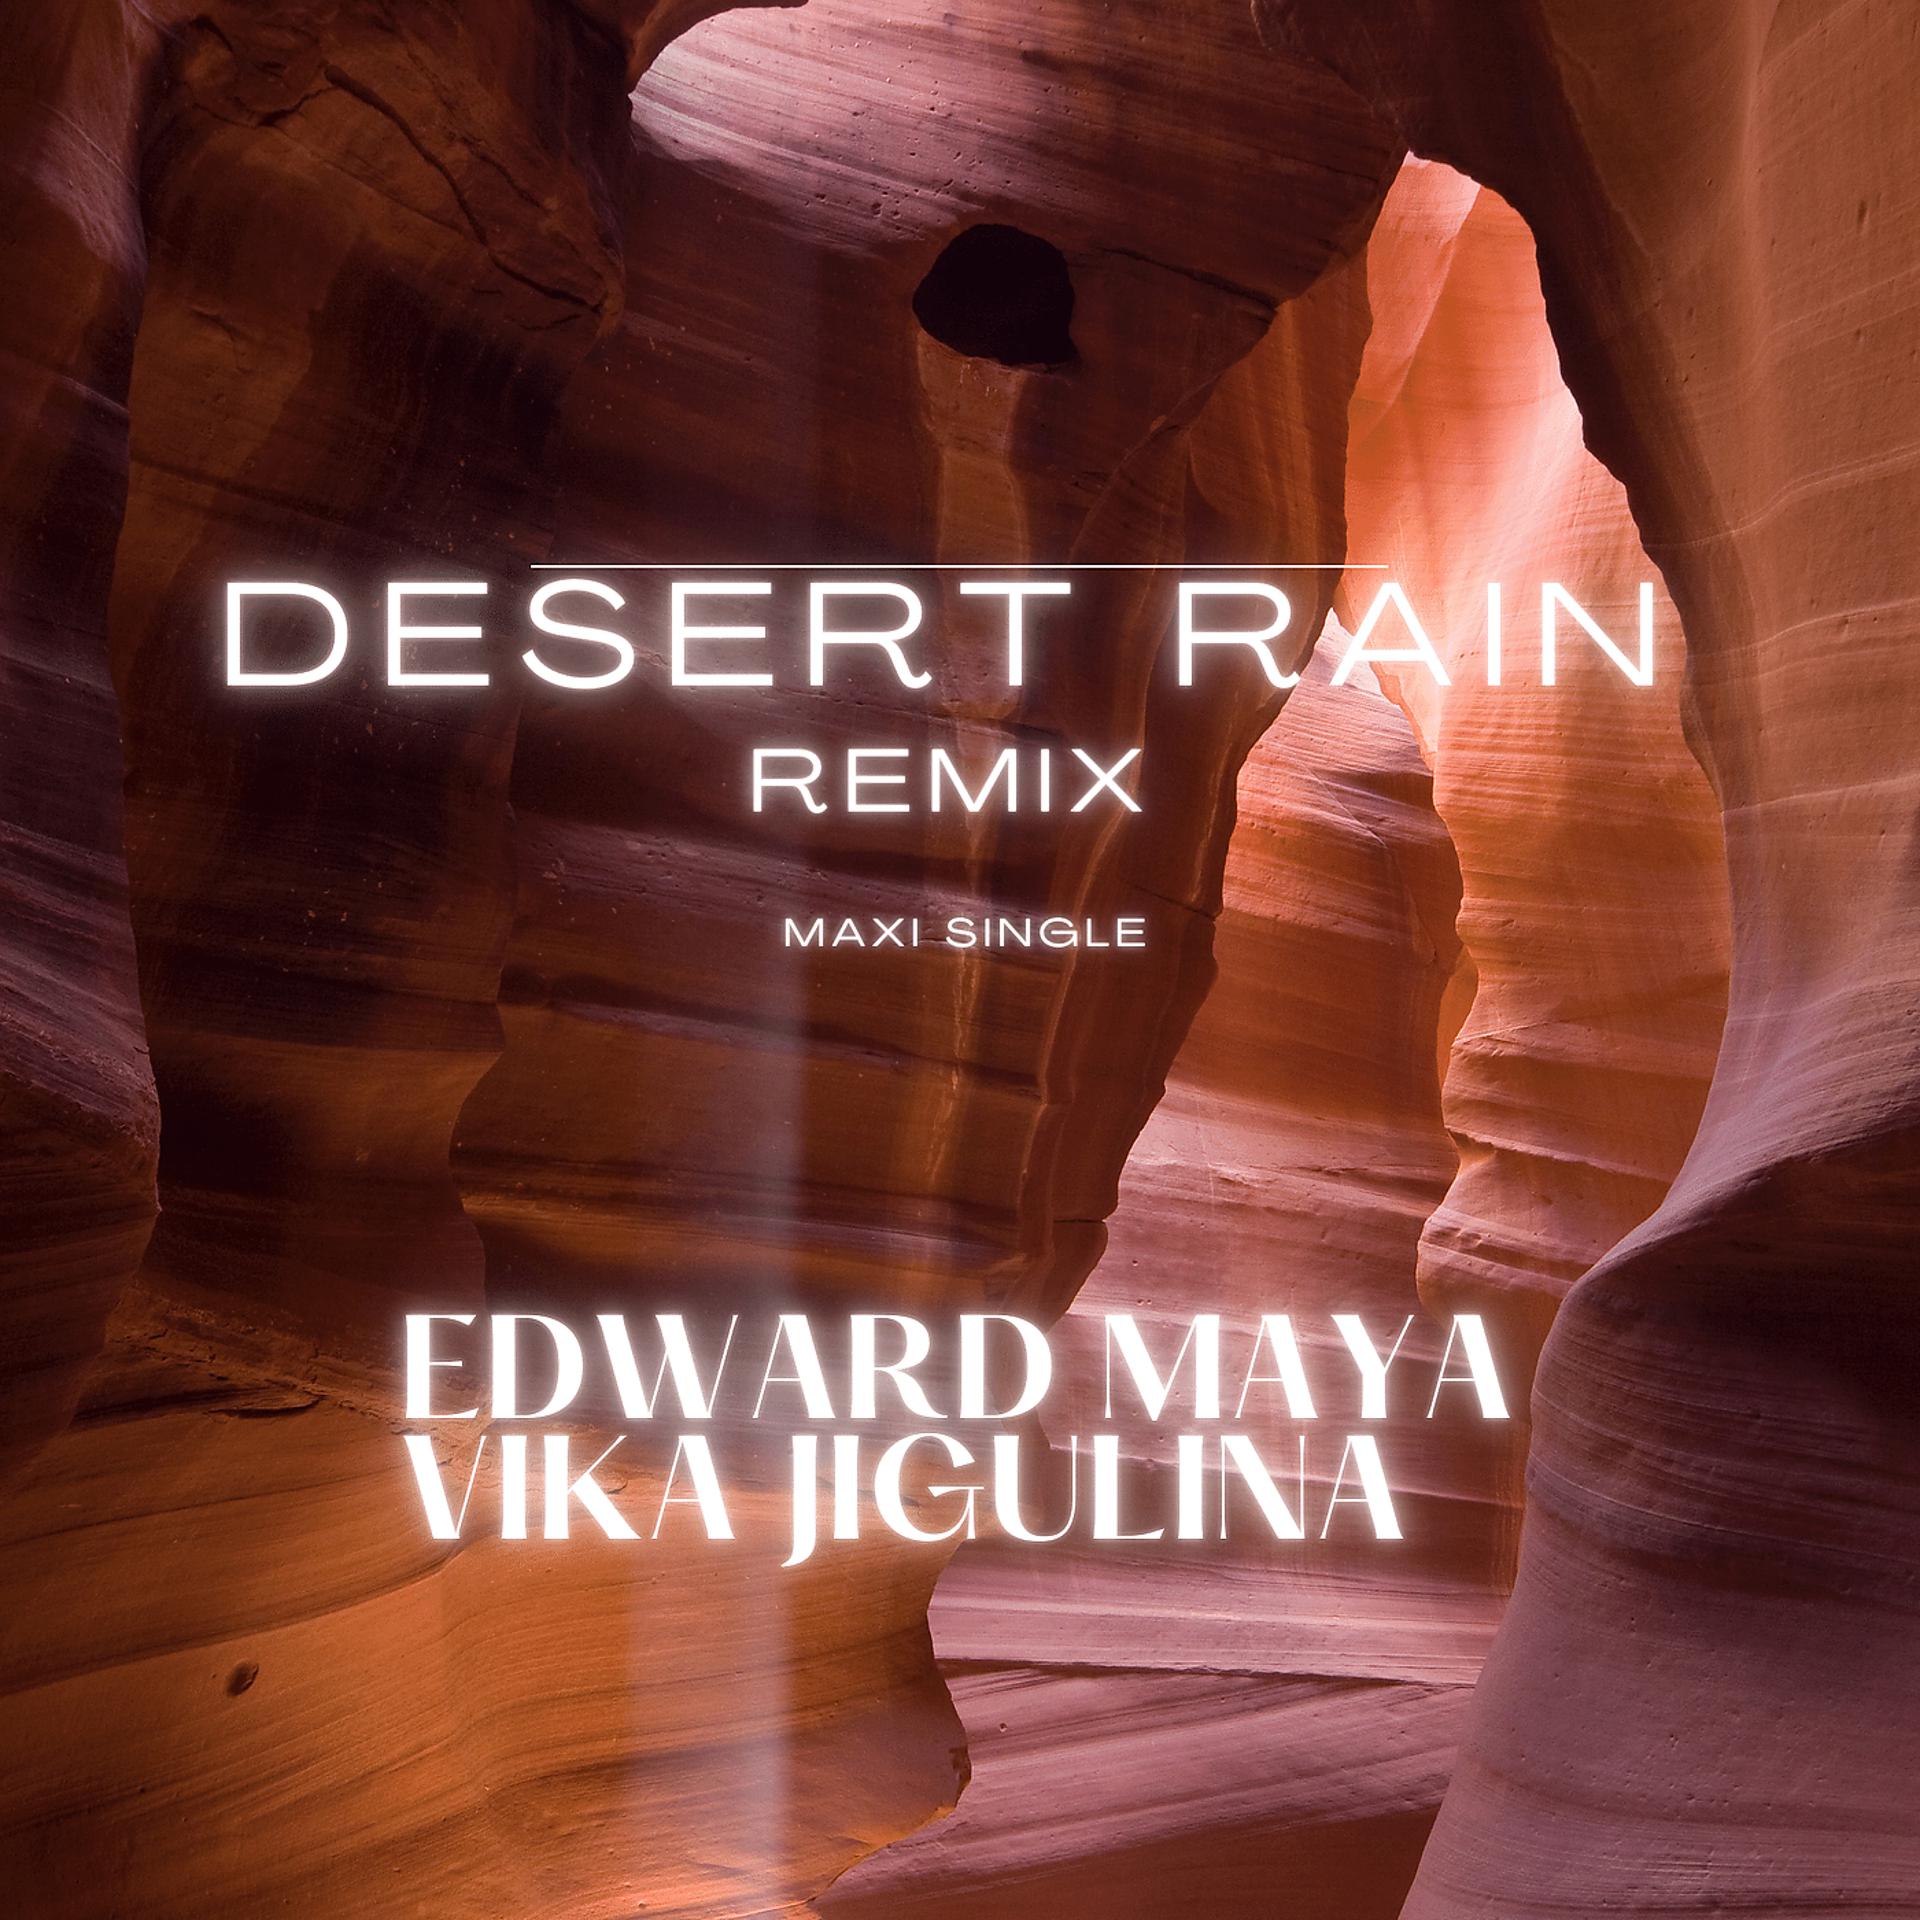 Edward Maya Desert Rain. Edward Maya Vika Jigulina. Edward Maya Vika Jigulina Desert Rain. Edward Maya & Vika Jigulina «Desert Rain» (2011). Edward maya feat